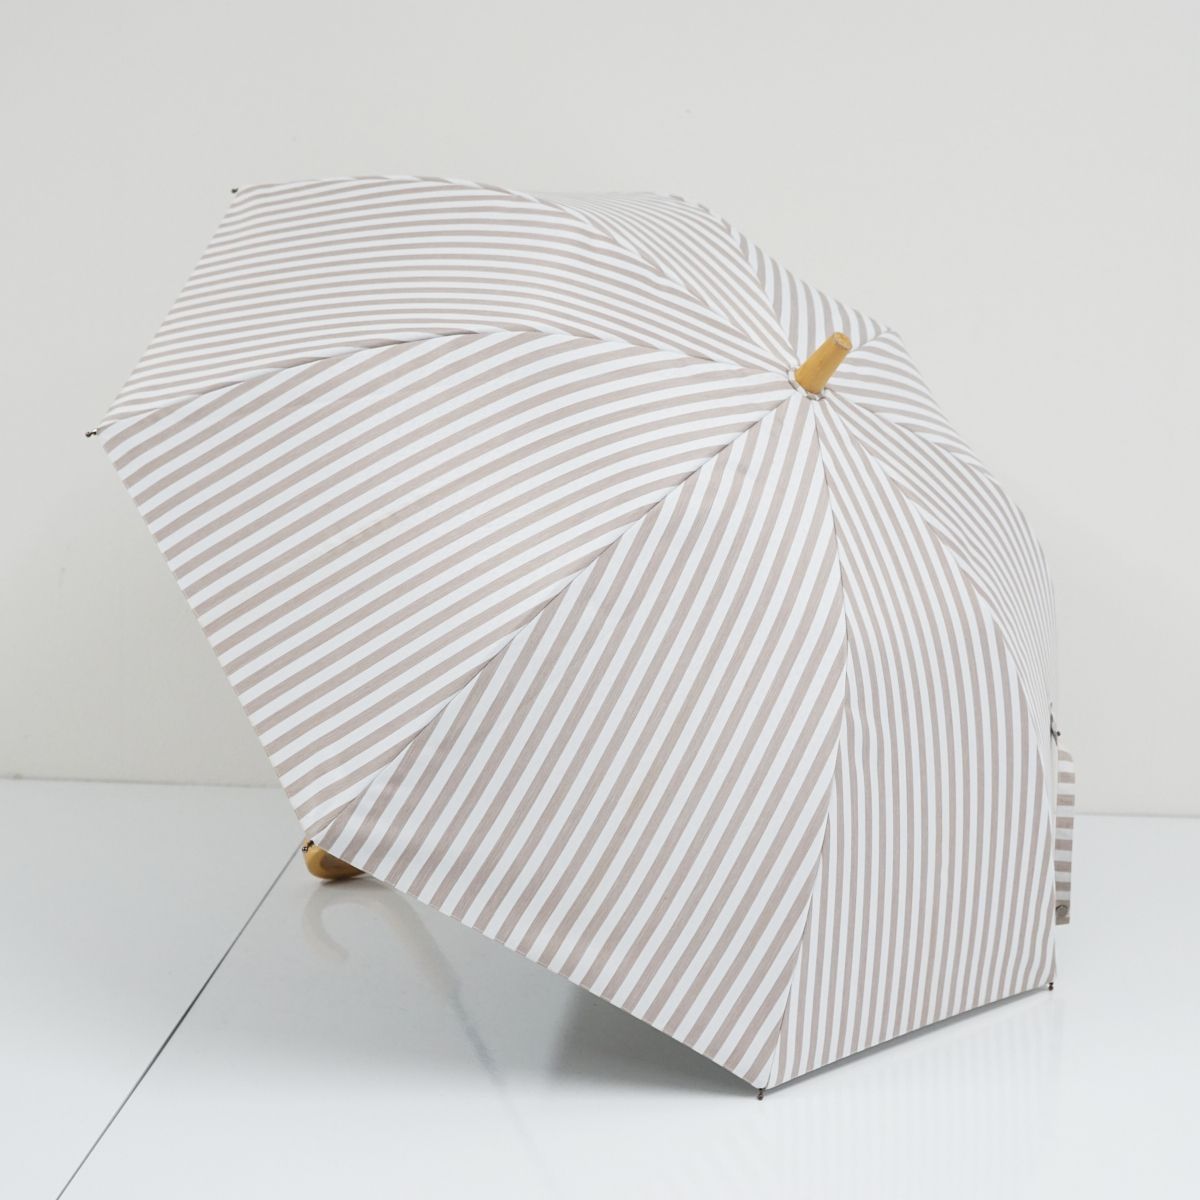 サンバリア100 完全遮光日傘 USED美品 Sサイズ ストライプ モカ UV 遮